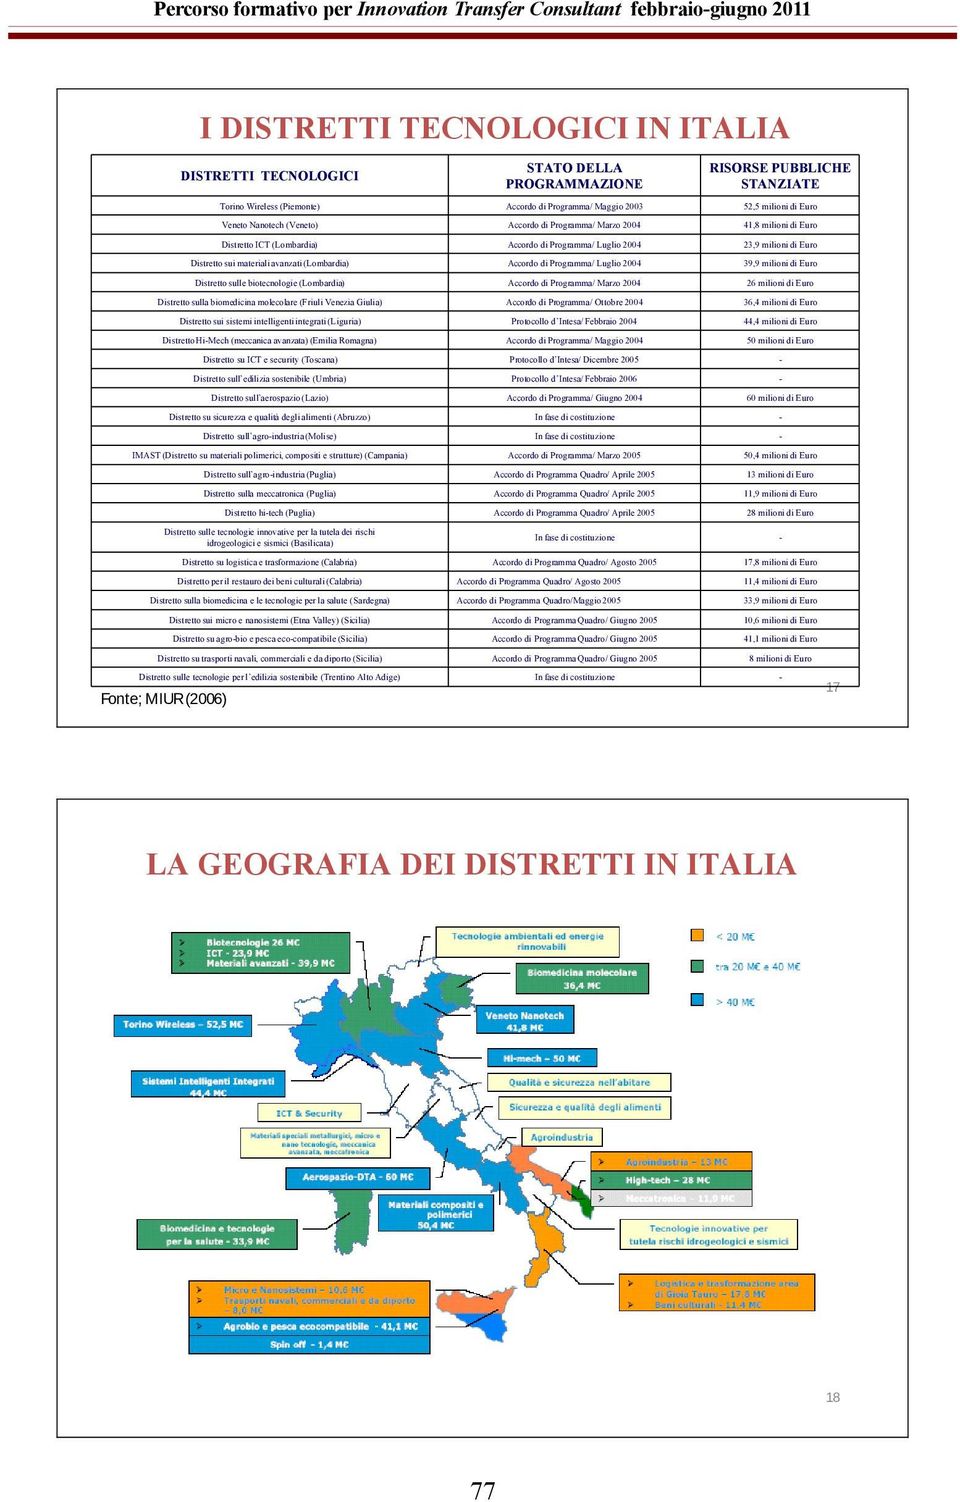 Accordo di Programma/ Luglio 2004 39,9 milioni di Euro Distretto sulle biotecnologie (Lombardia) Accordo di Programma/ Marzo 2004 26 milioni di Euro Distretto sulla biomedicina molecolare (Friuli